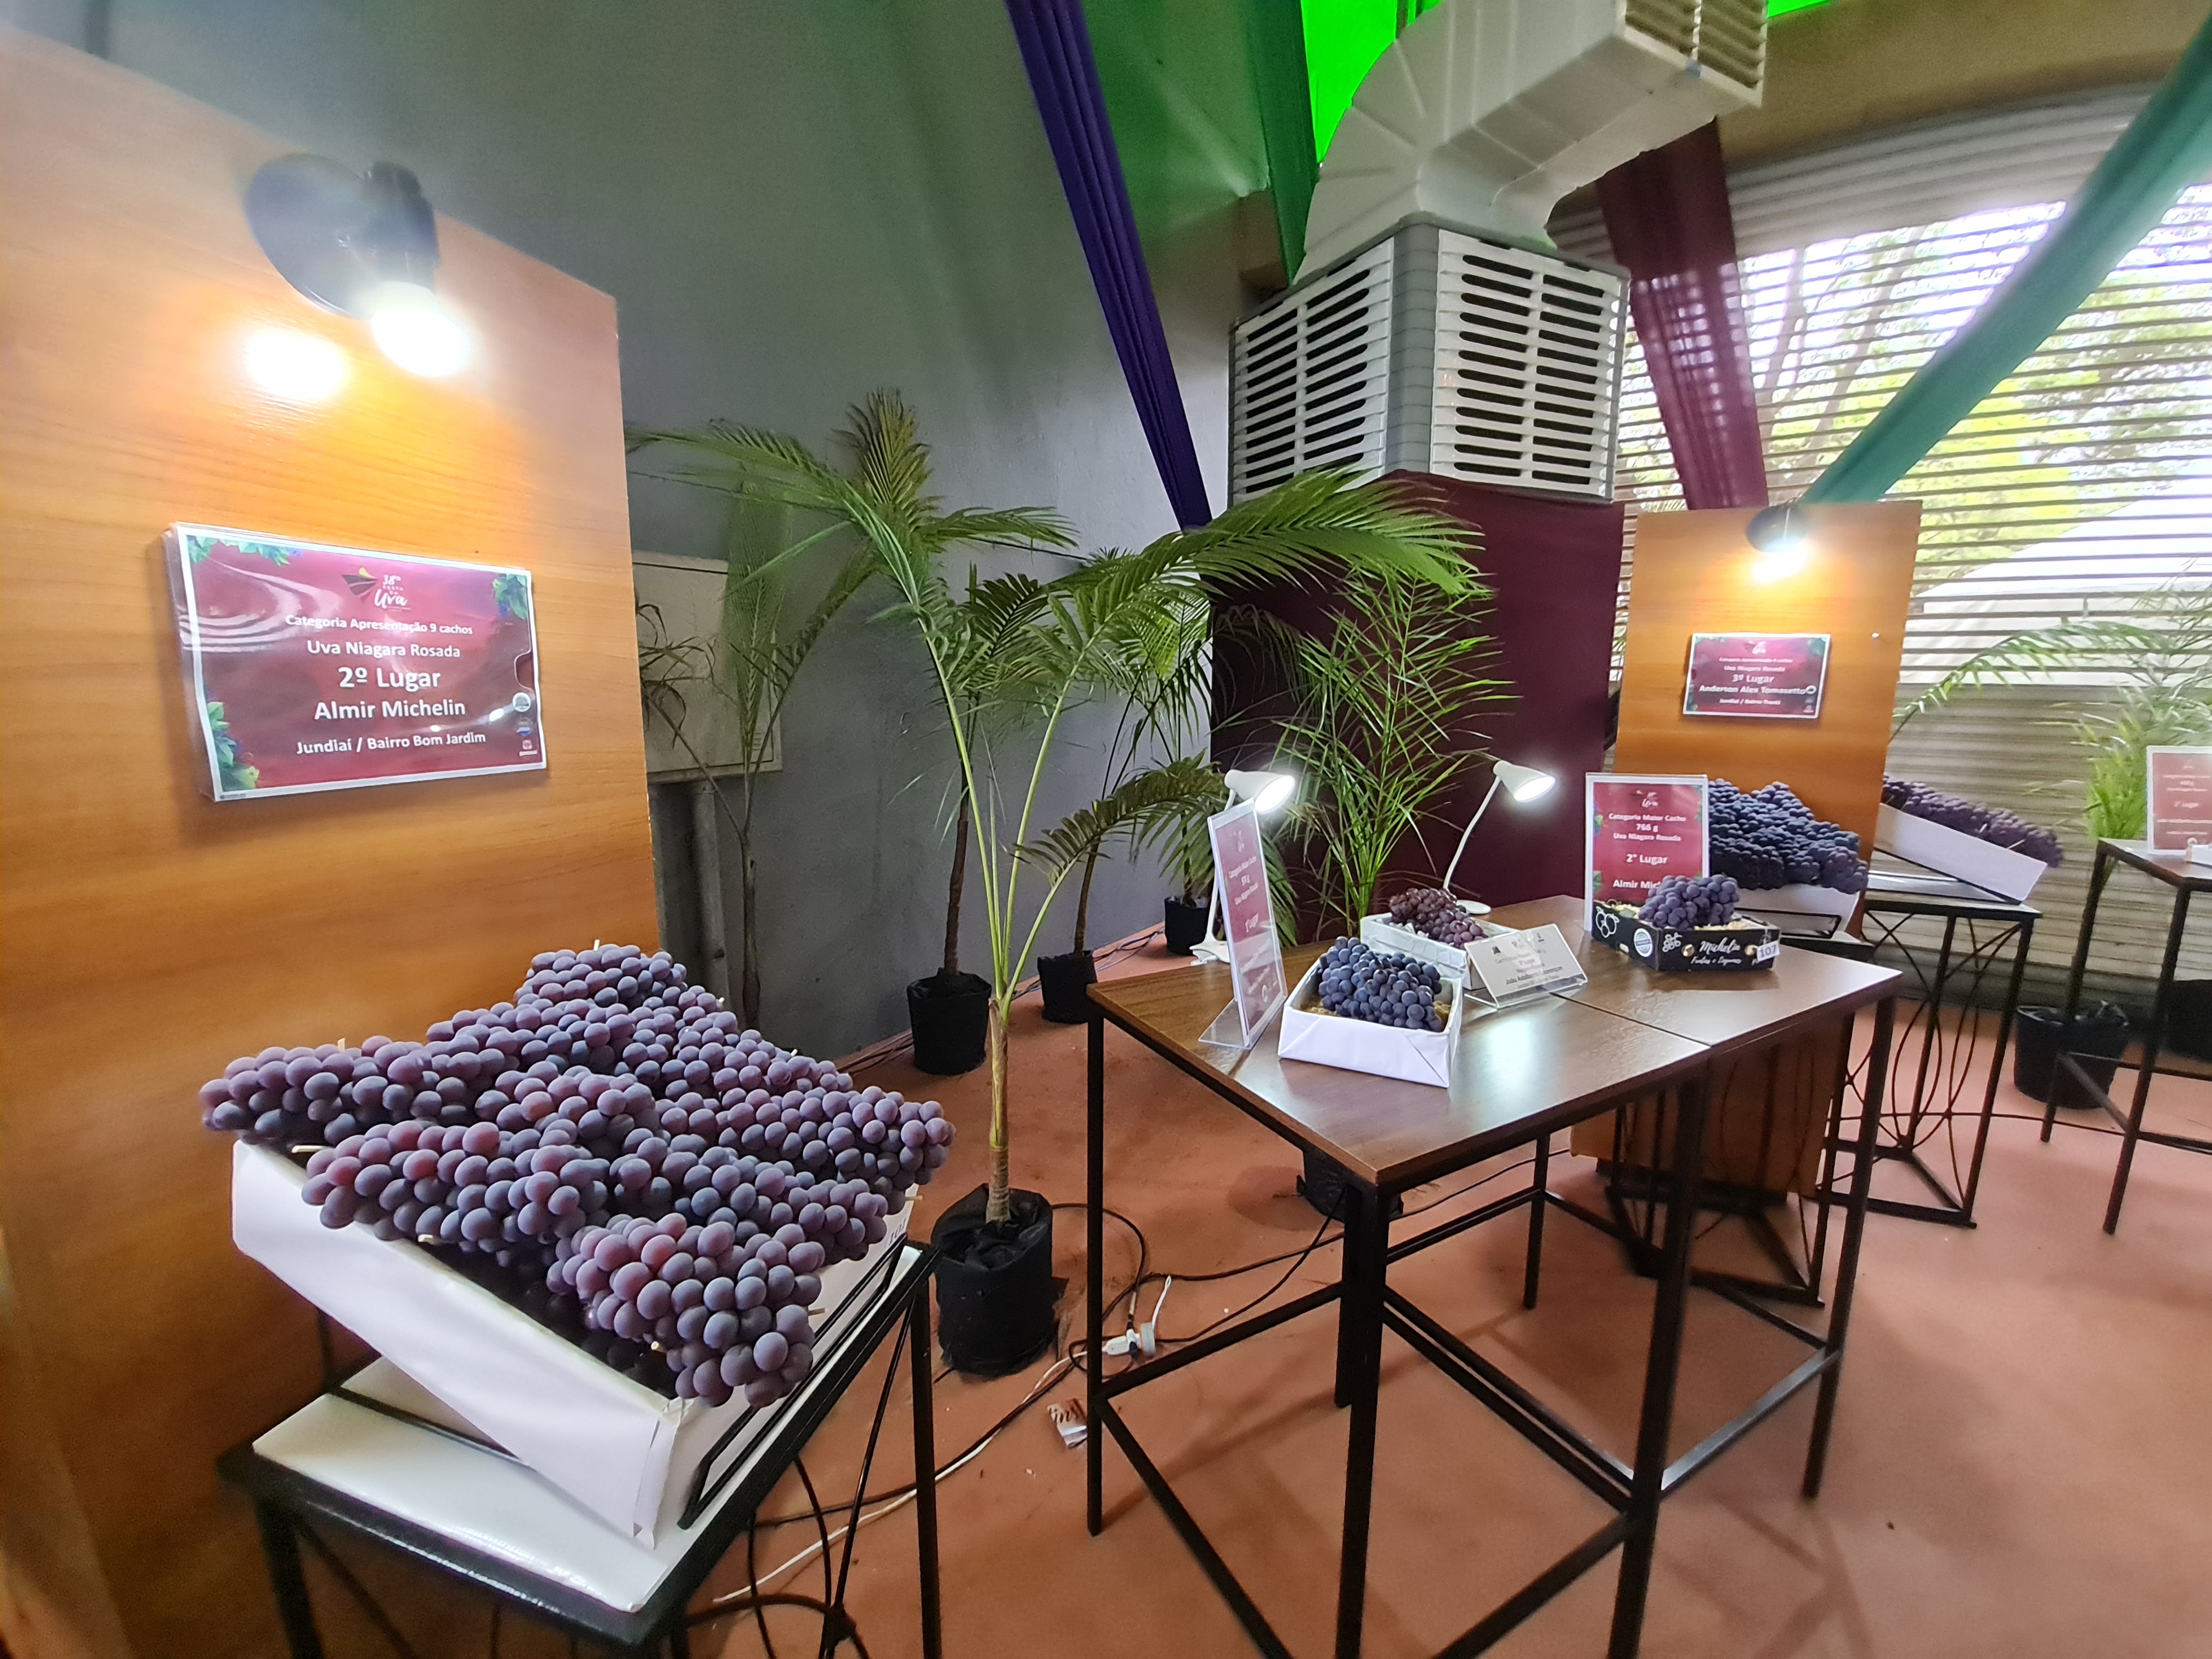 Exposição das uvas premiadas. Foto: Isabela Frasinelli/iG